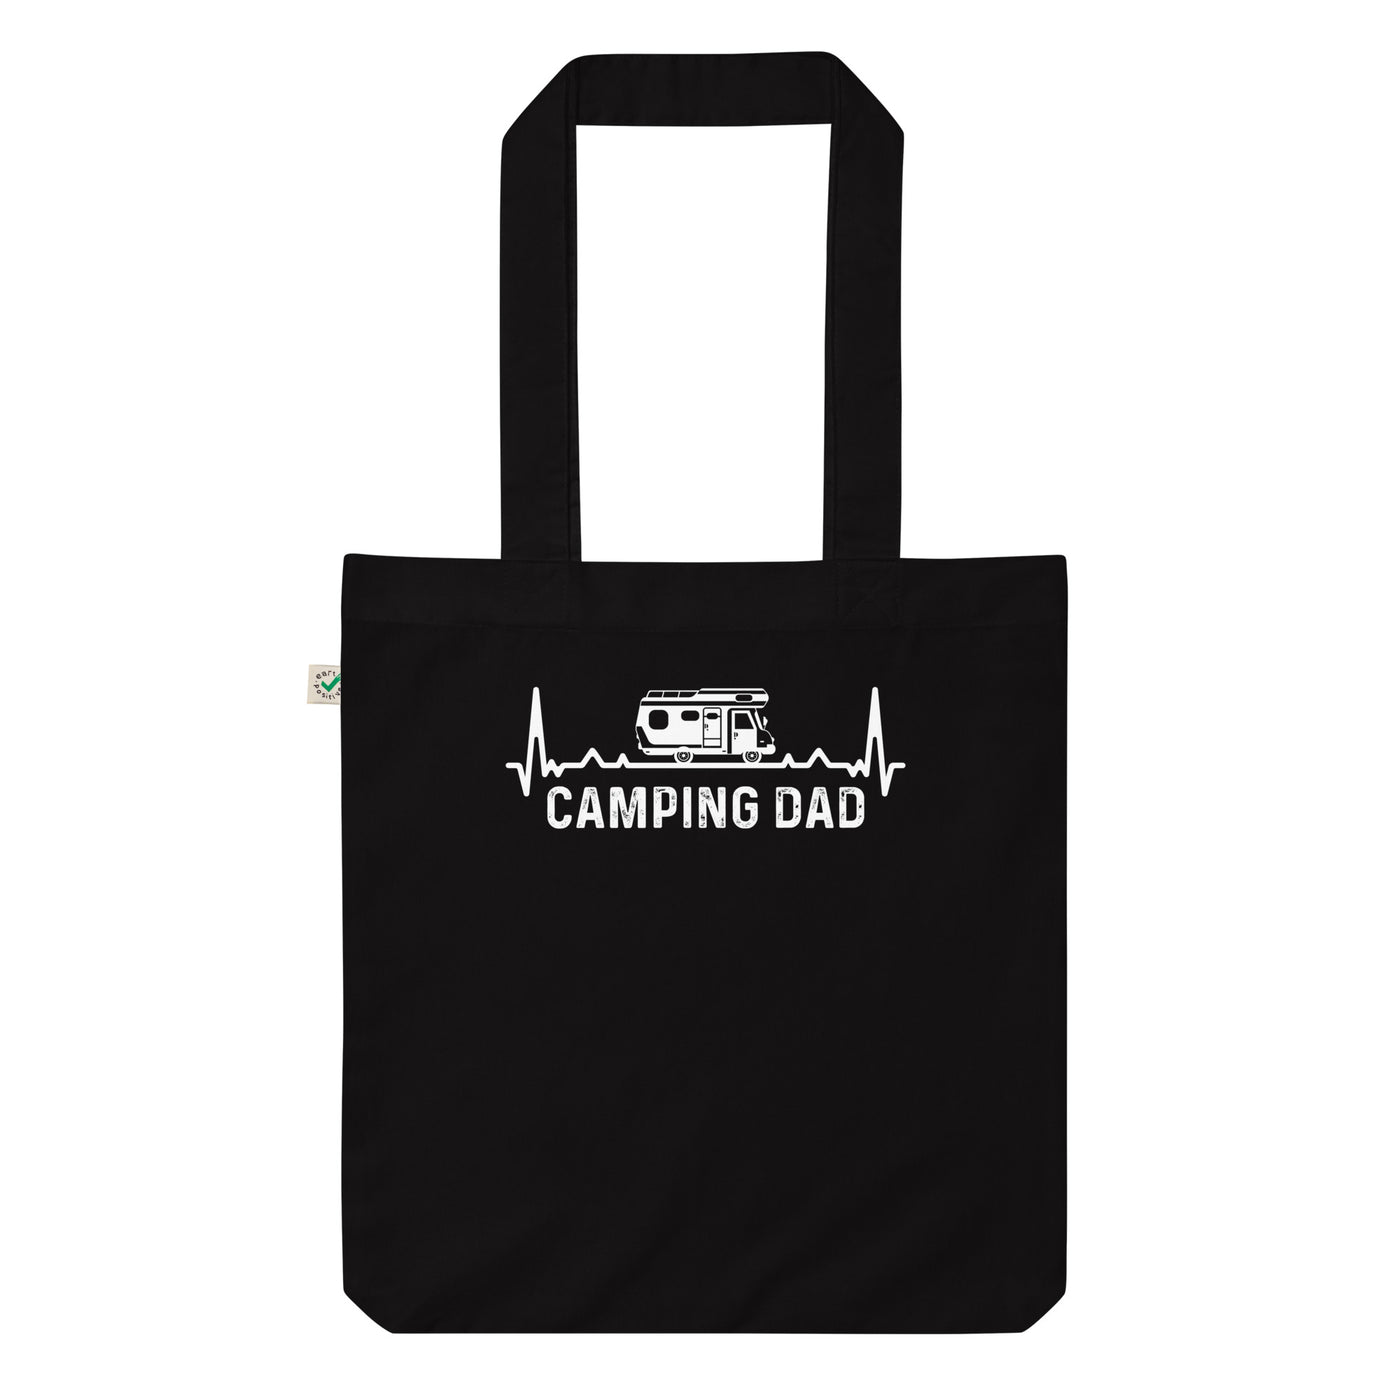 Camping Dad 3 - Organic Einkaufstasche camping